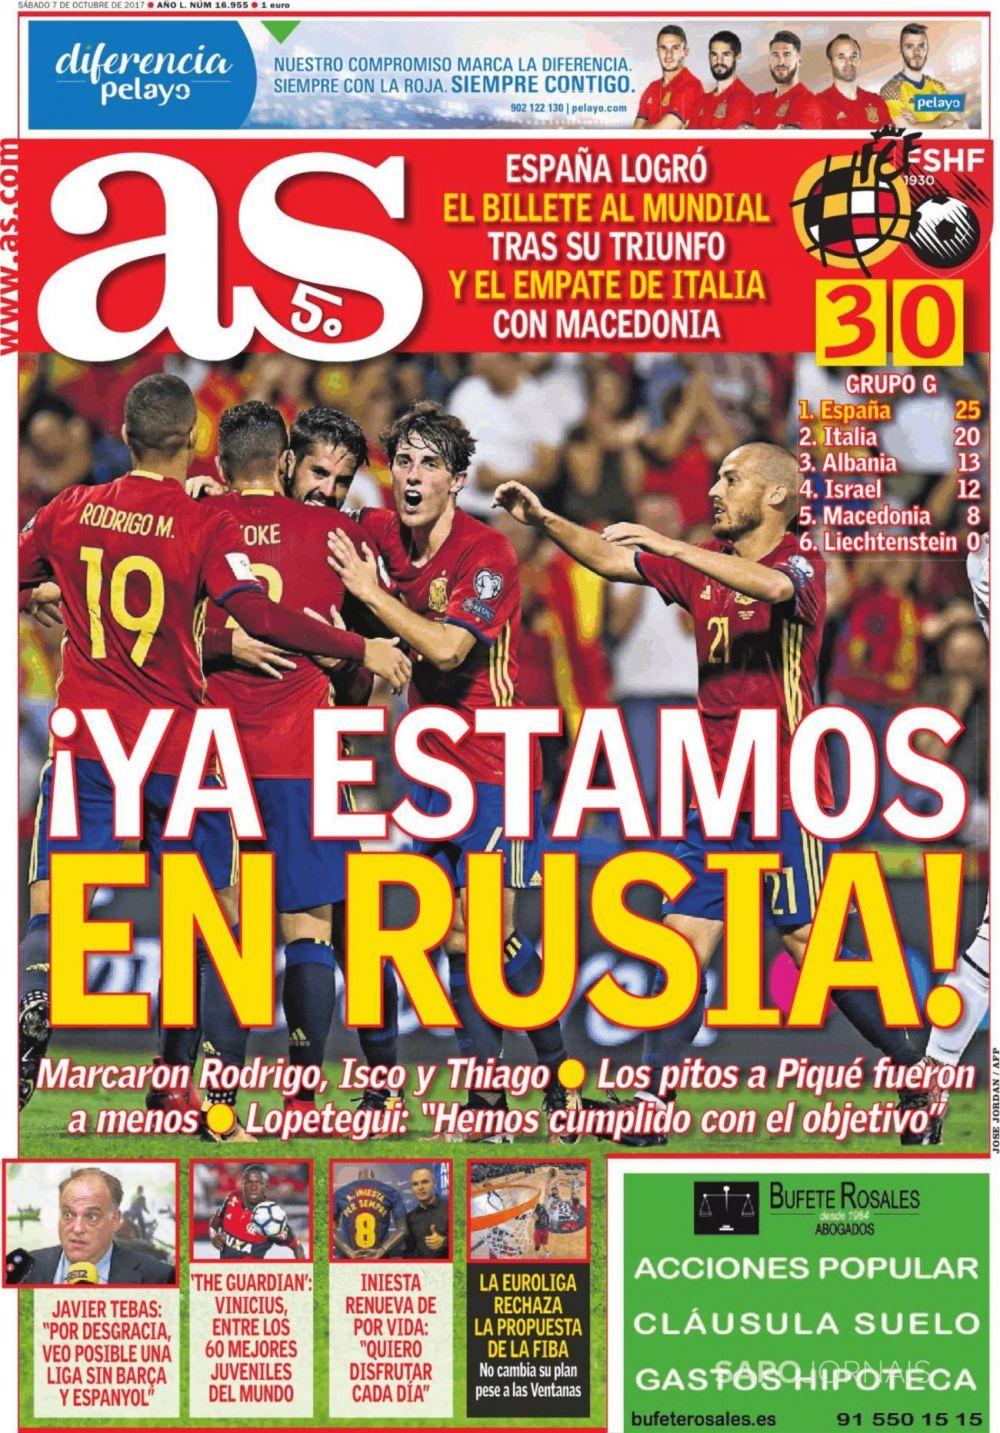 西甲今日头版:西班牙晋级世界杯,小白巴萨定终